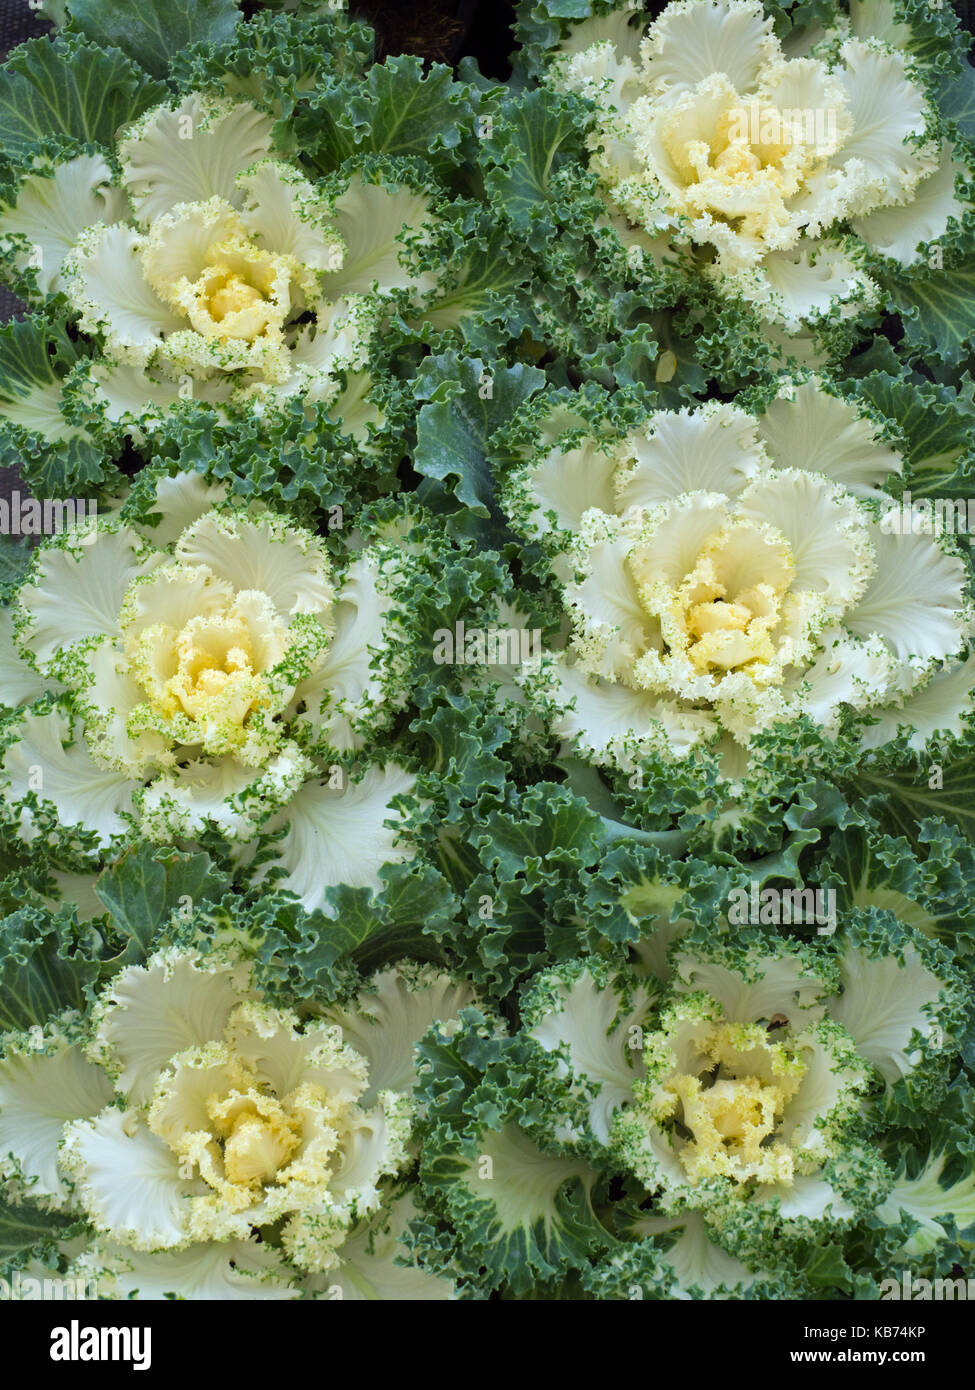 Nagoya White Ornamental Kale in garden border Stock Photo